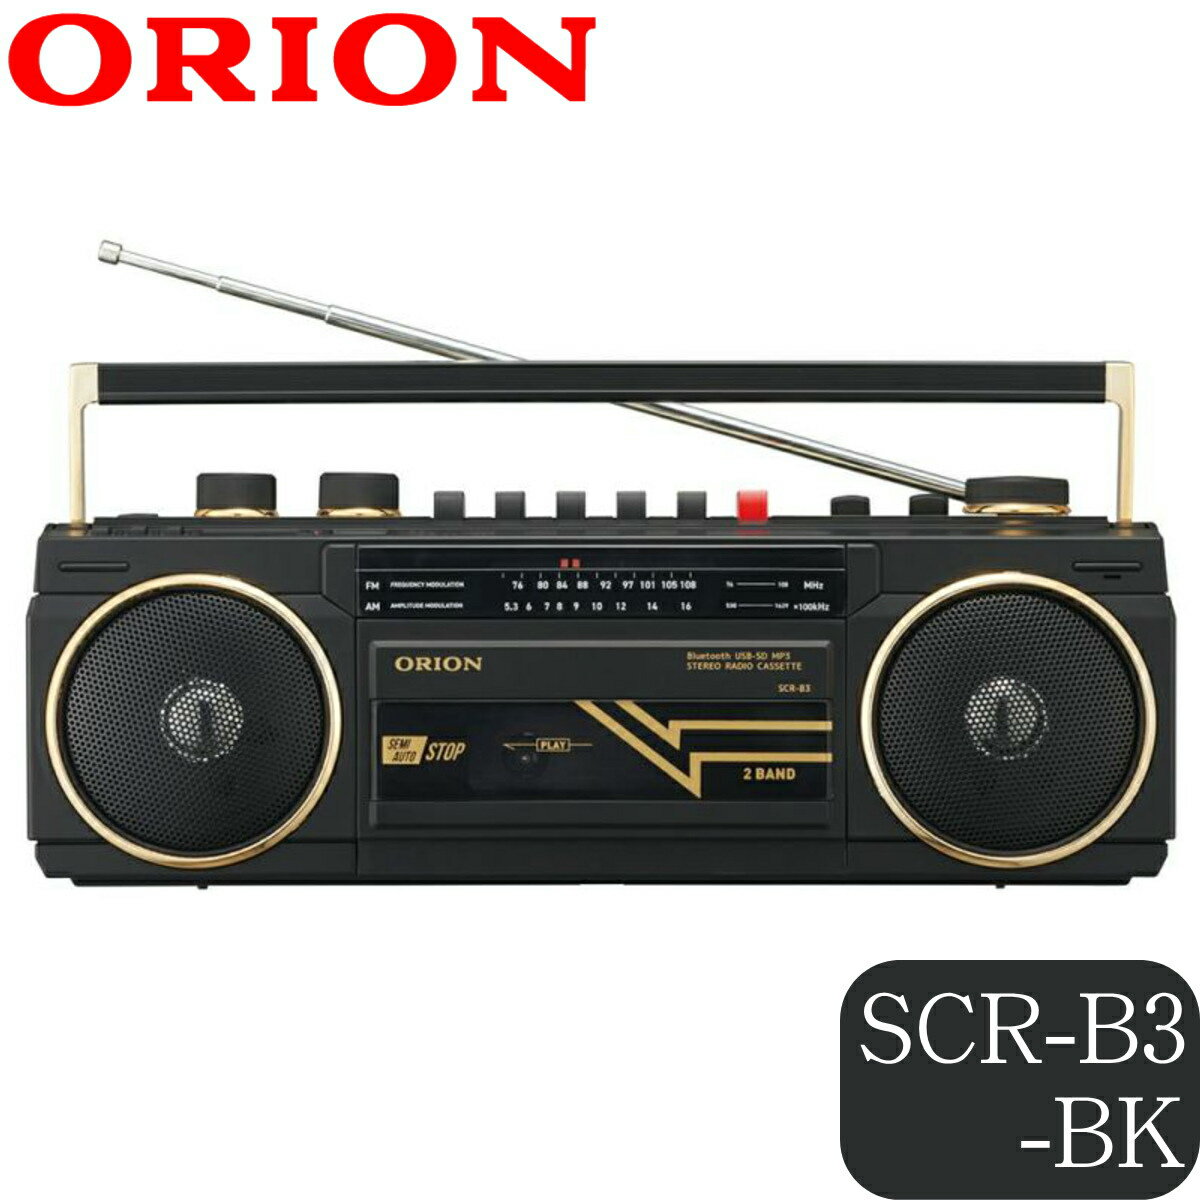 【あす楽】ORION オリオン Bluetooth機能搭載 ステレオラジカセ SCR-B3 BK ブラック 2電源方式 SD USB対応 ドウシシャ 1年保証